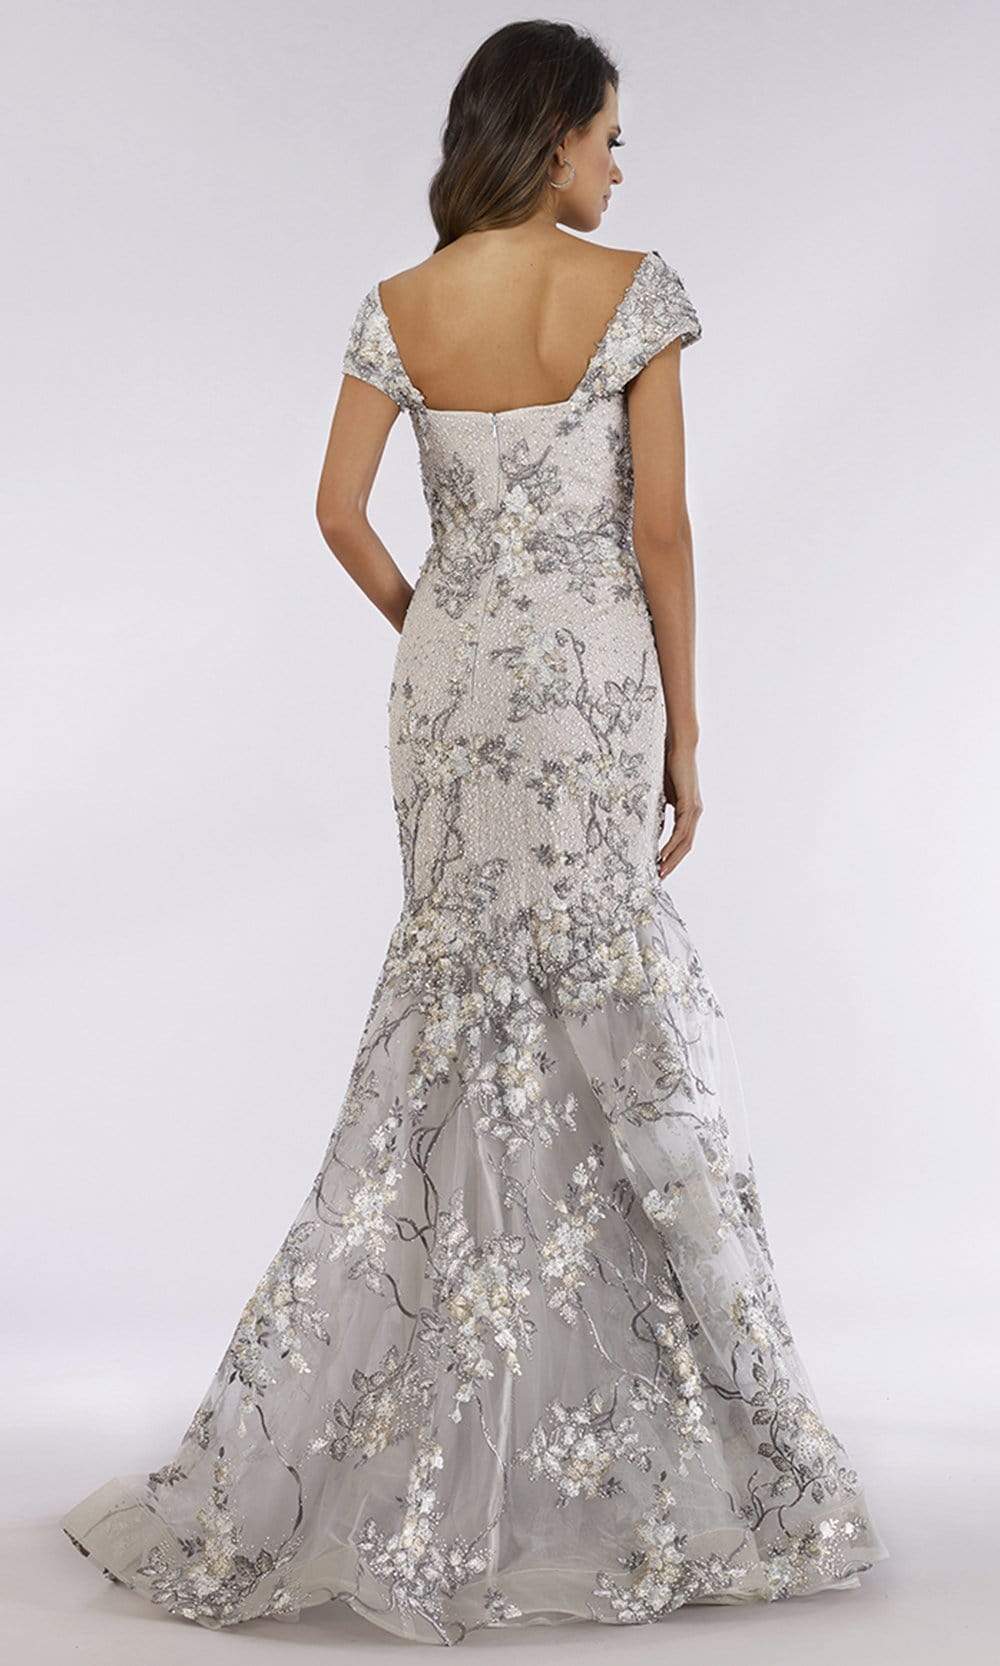 Lara Dresses - 29642 Short Sleeve Beaded Lace Mermaid Dress Evening Dresses